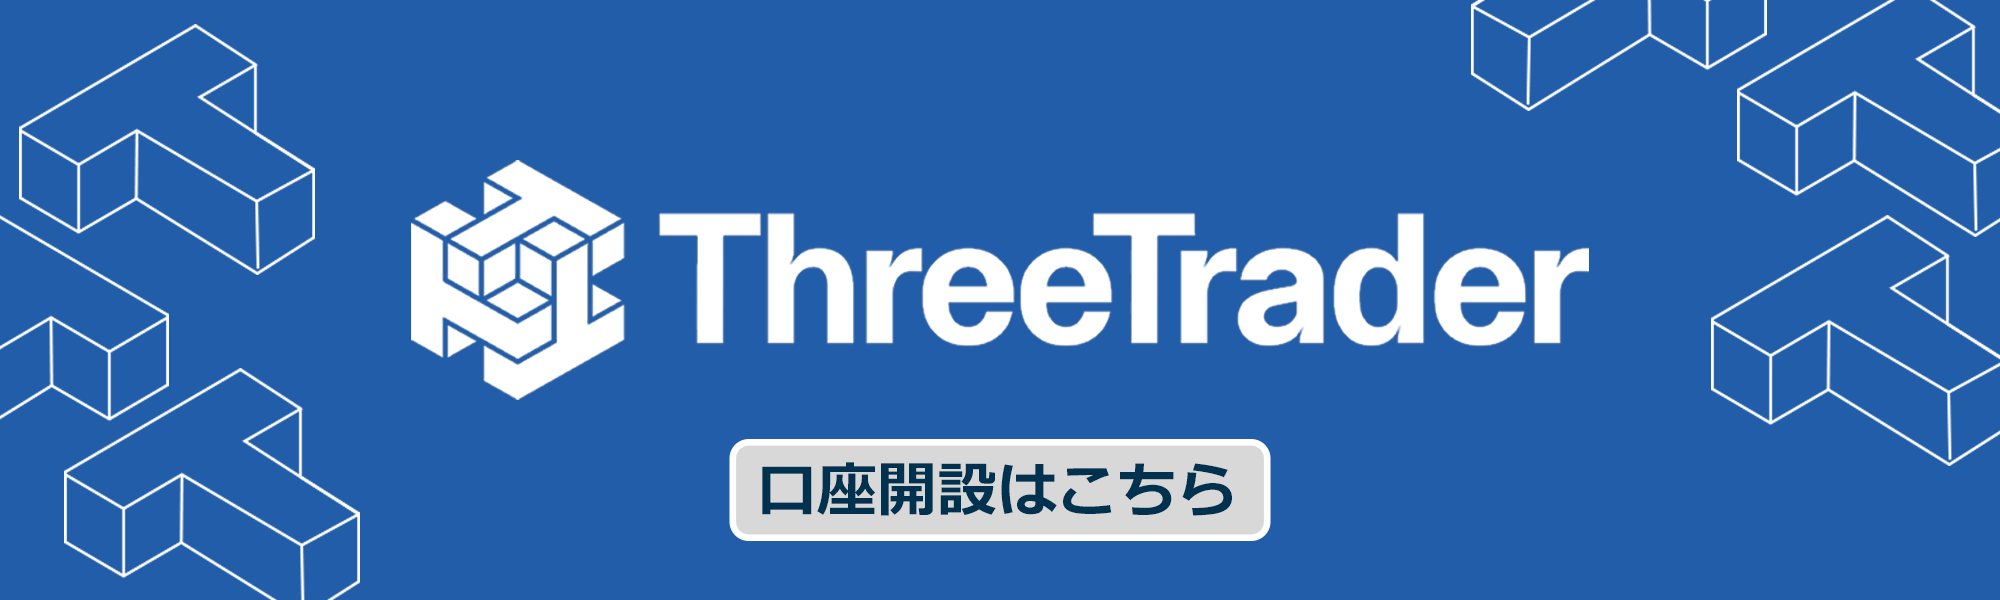 threetrader